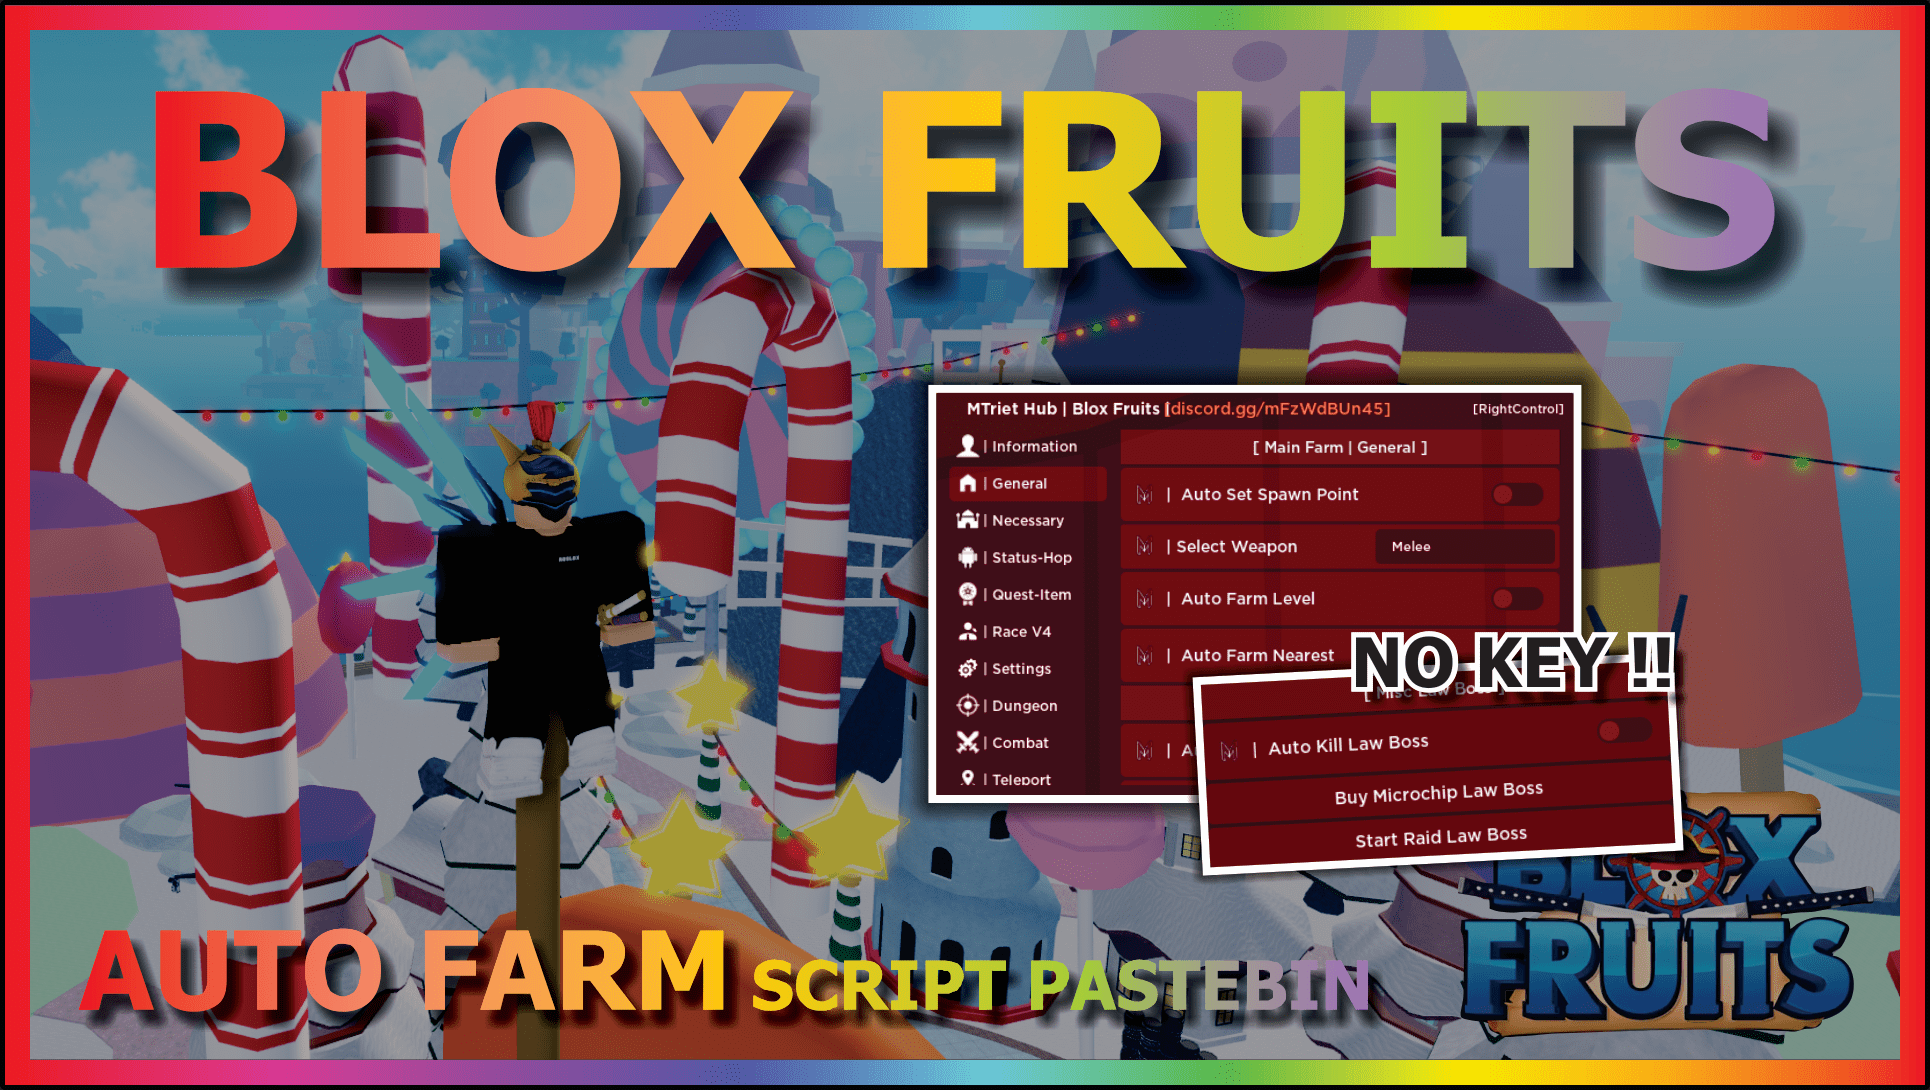 MTriet Hub New Blox Fruits Script Download 100% Free